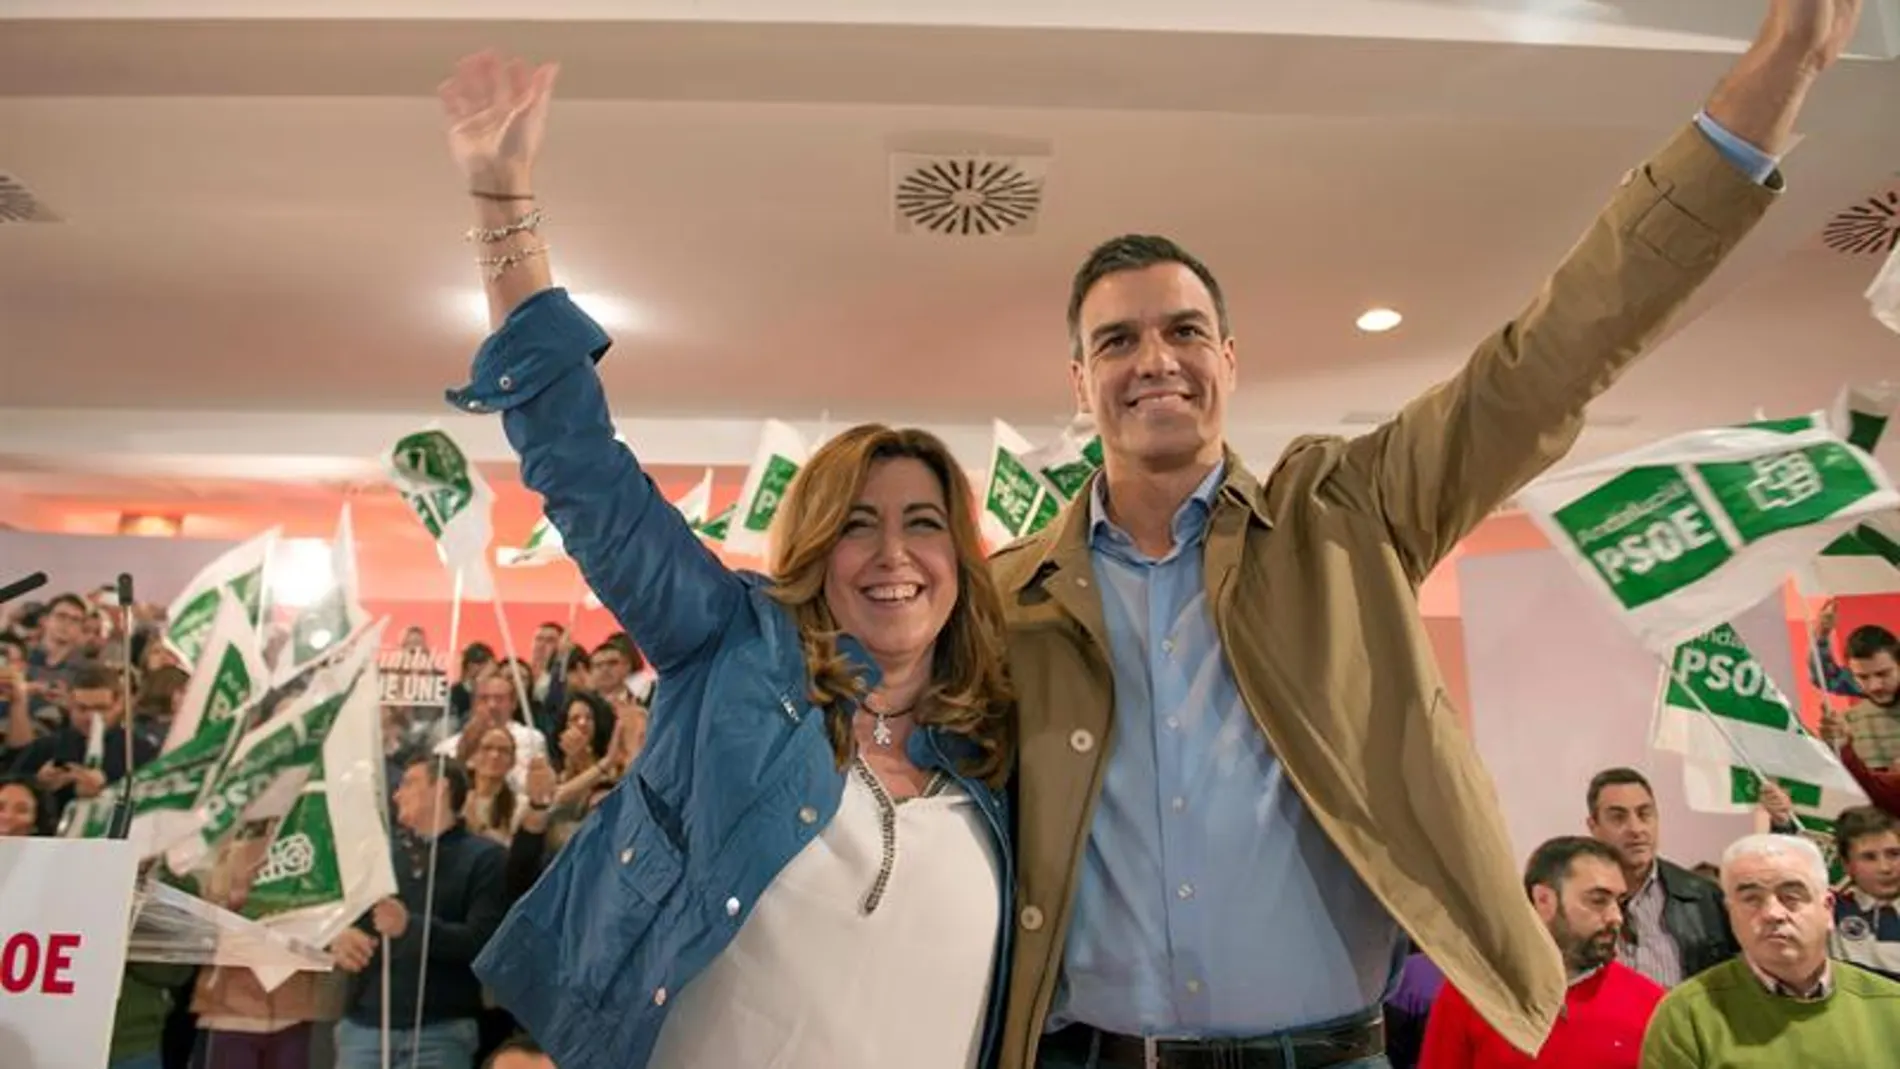 Pedro Sánchez y Susana Díaz en el evento en Jaén